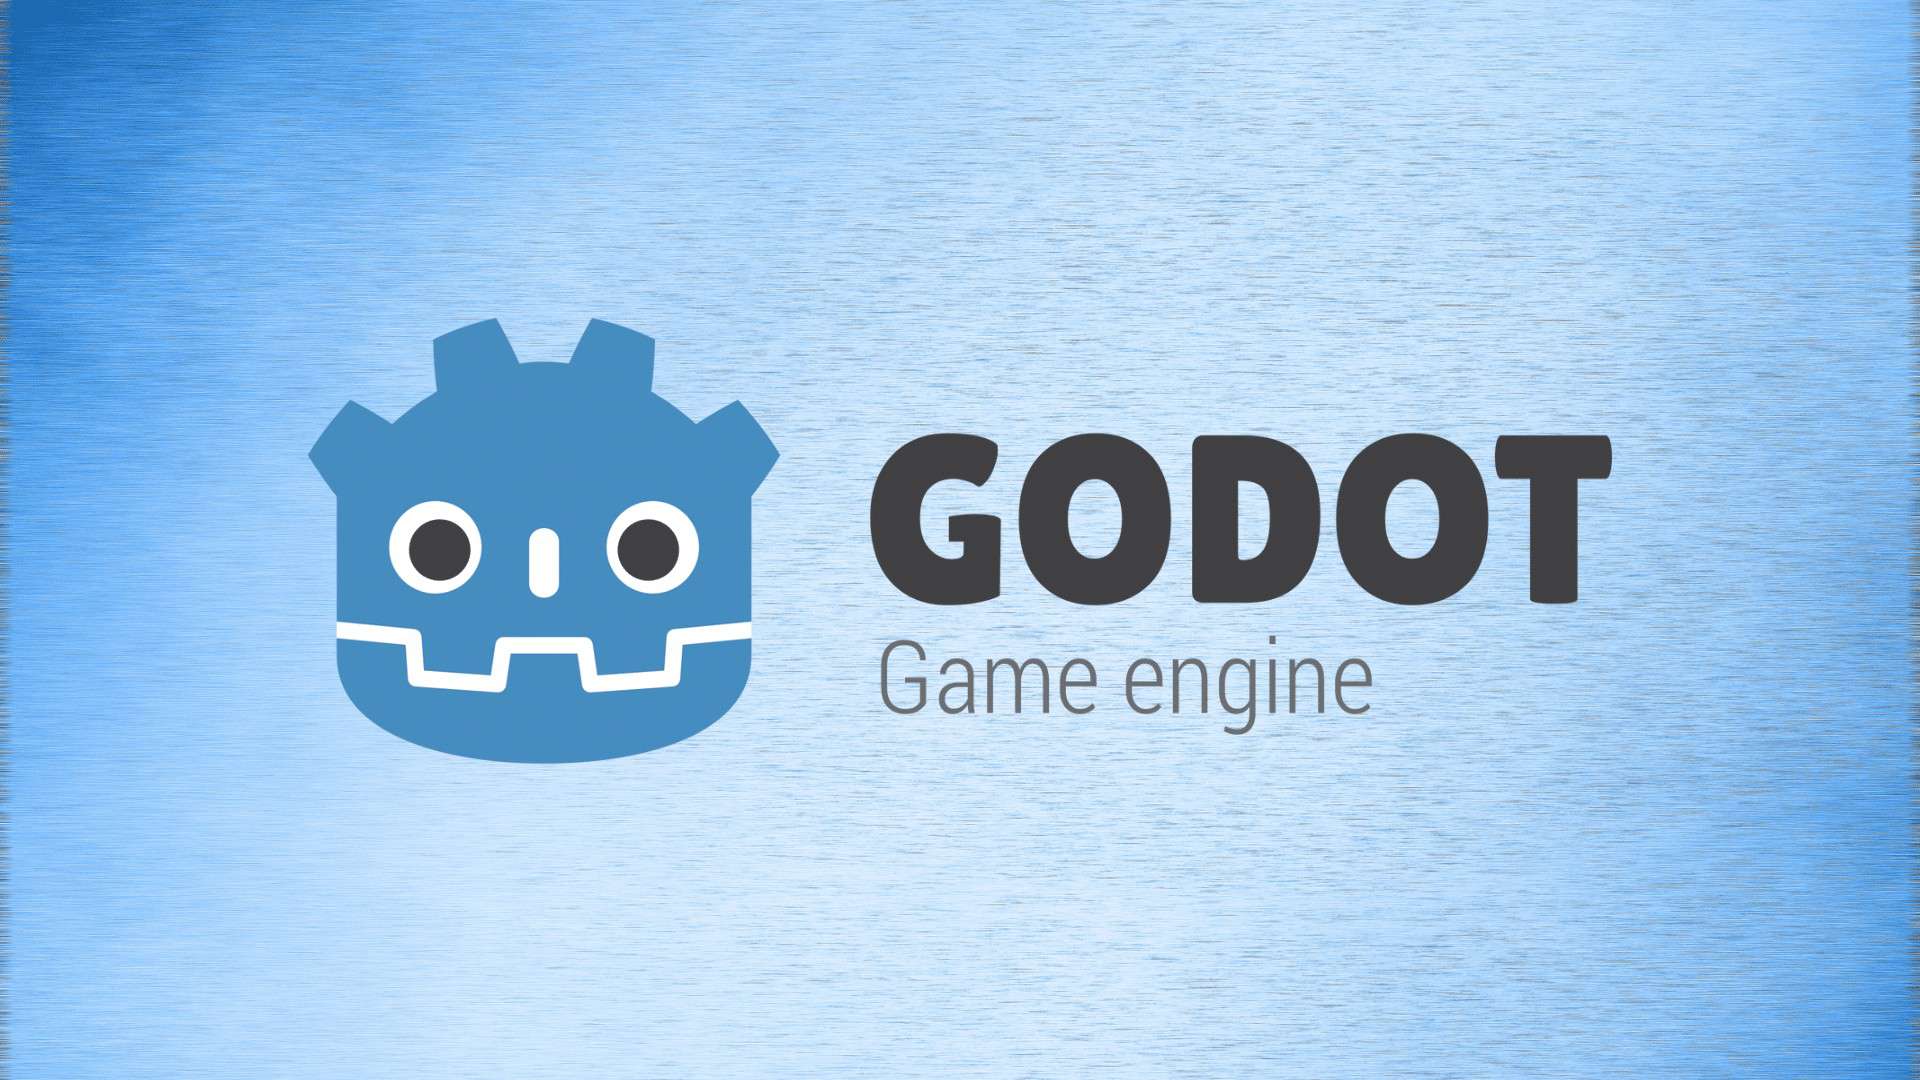 オープンソースのGodot EngineがAMD FSR 2.2をサポートし、OpenGLとシェーダーの改良を実施